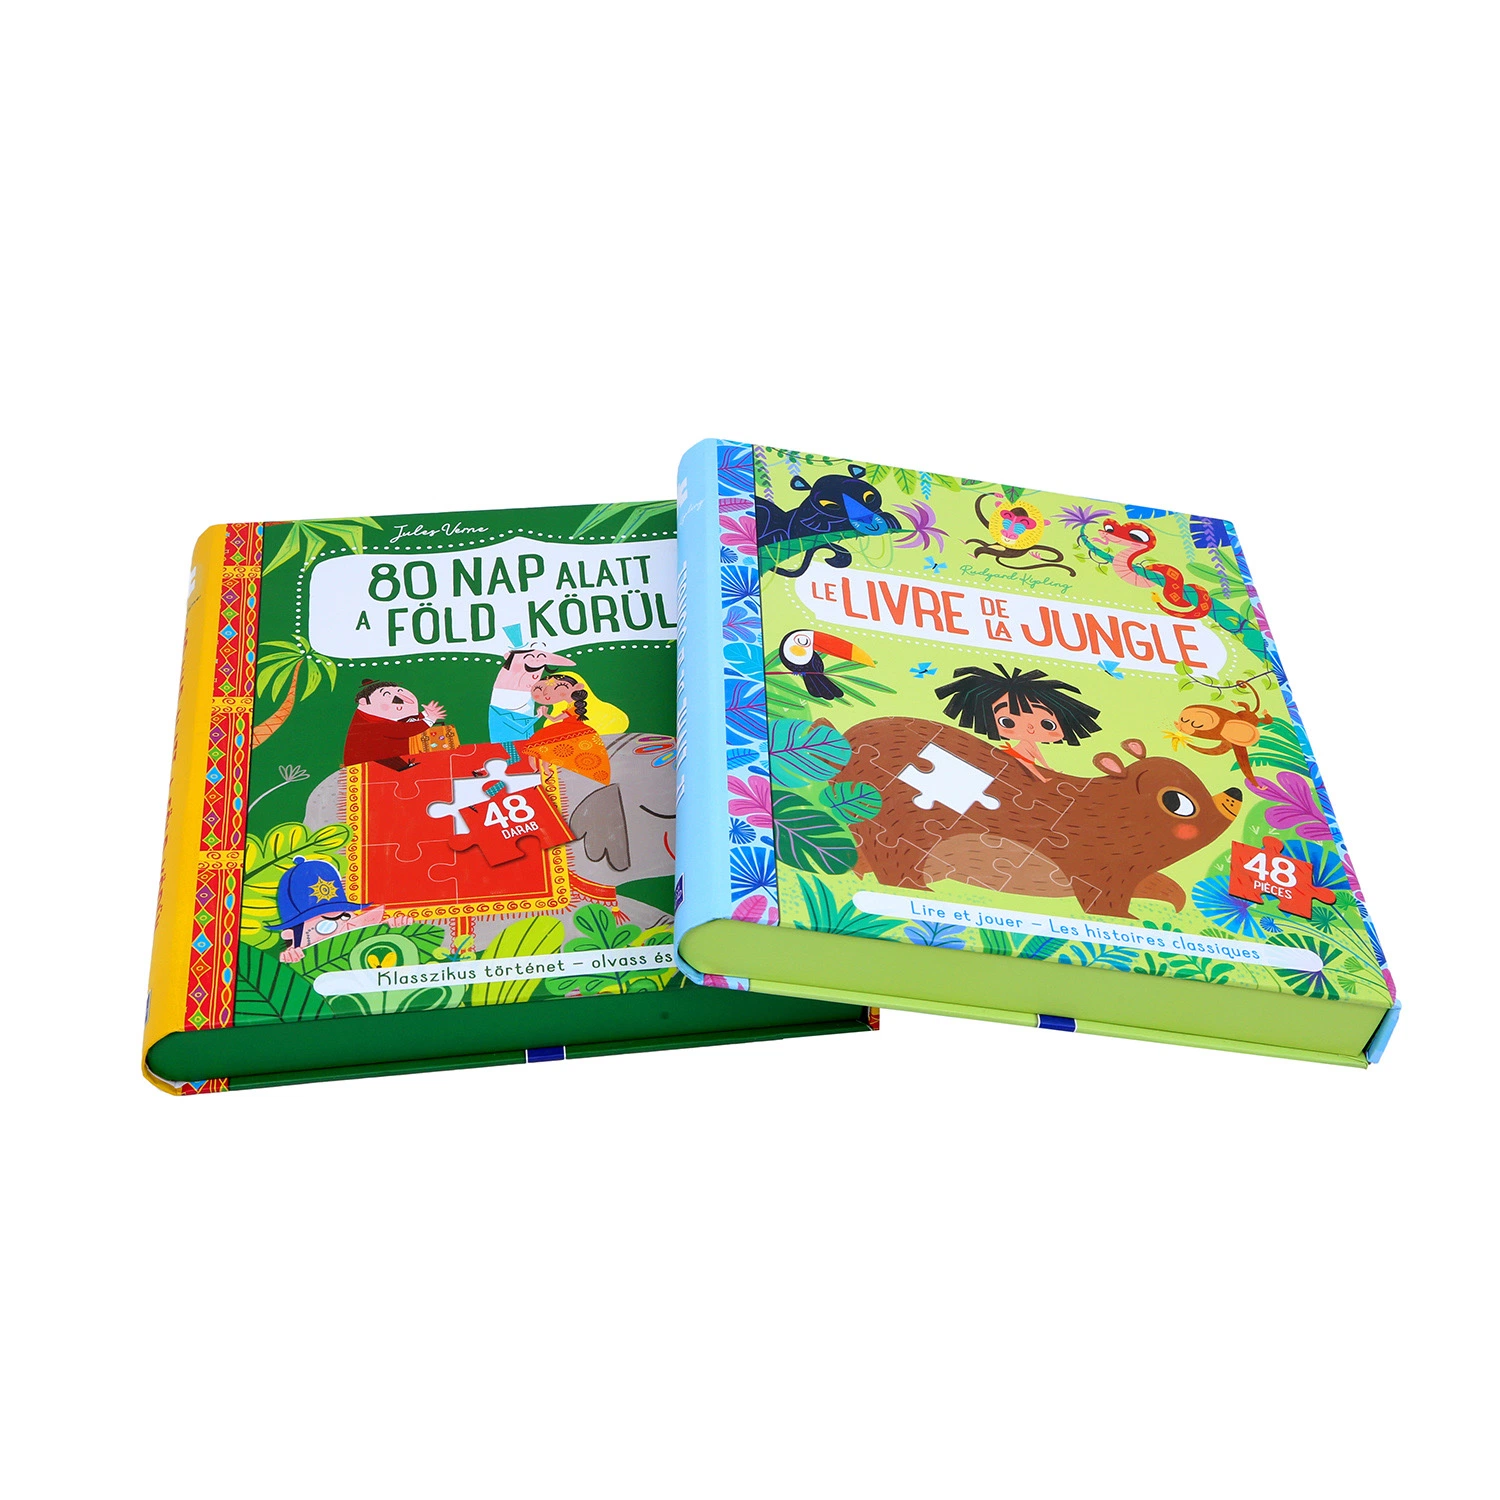 Печать набора детских книг и рамки